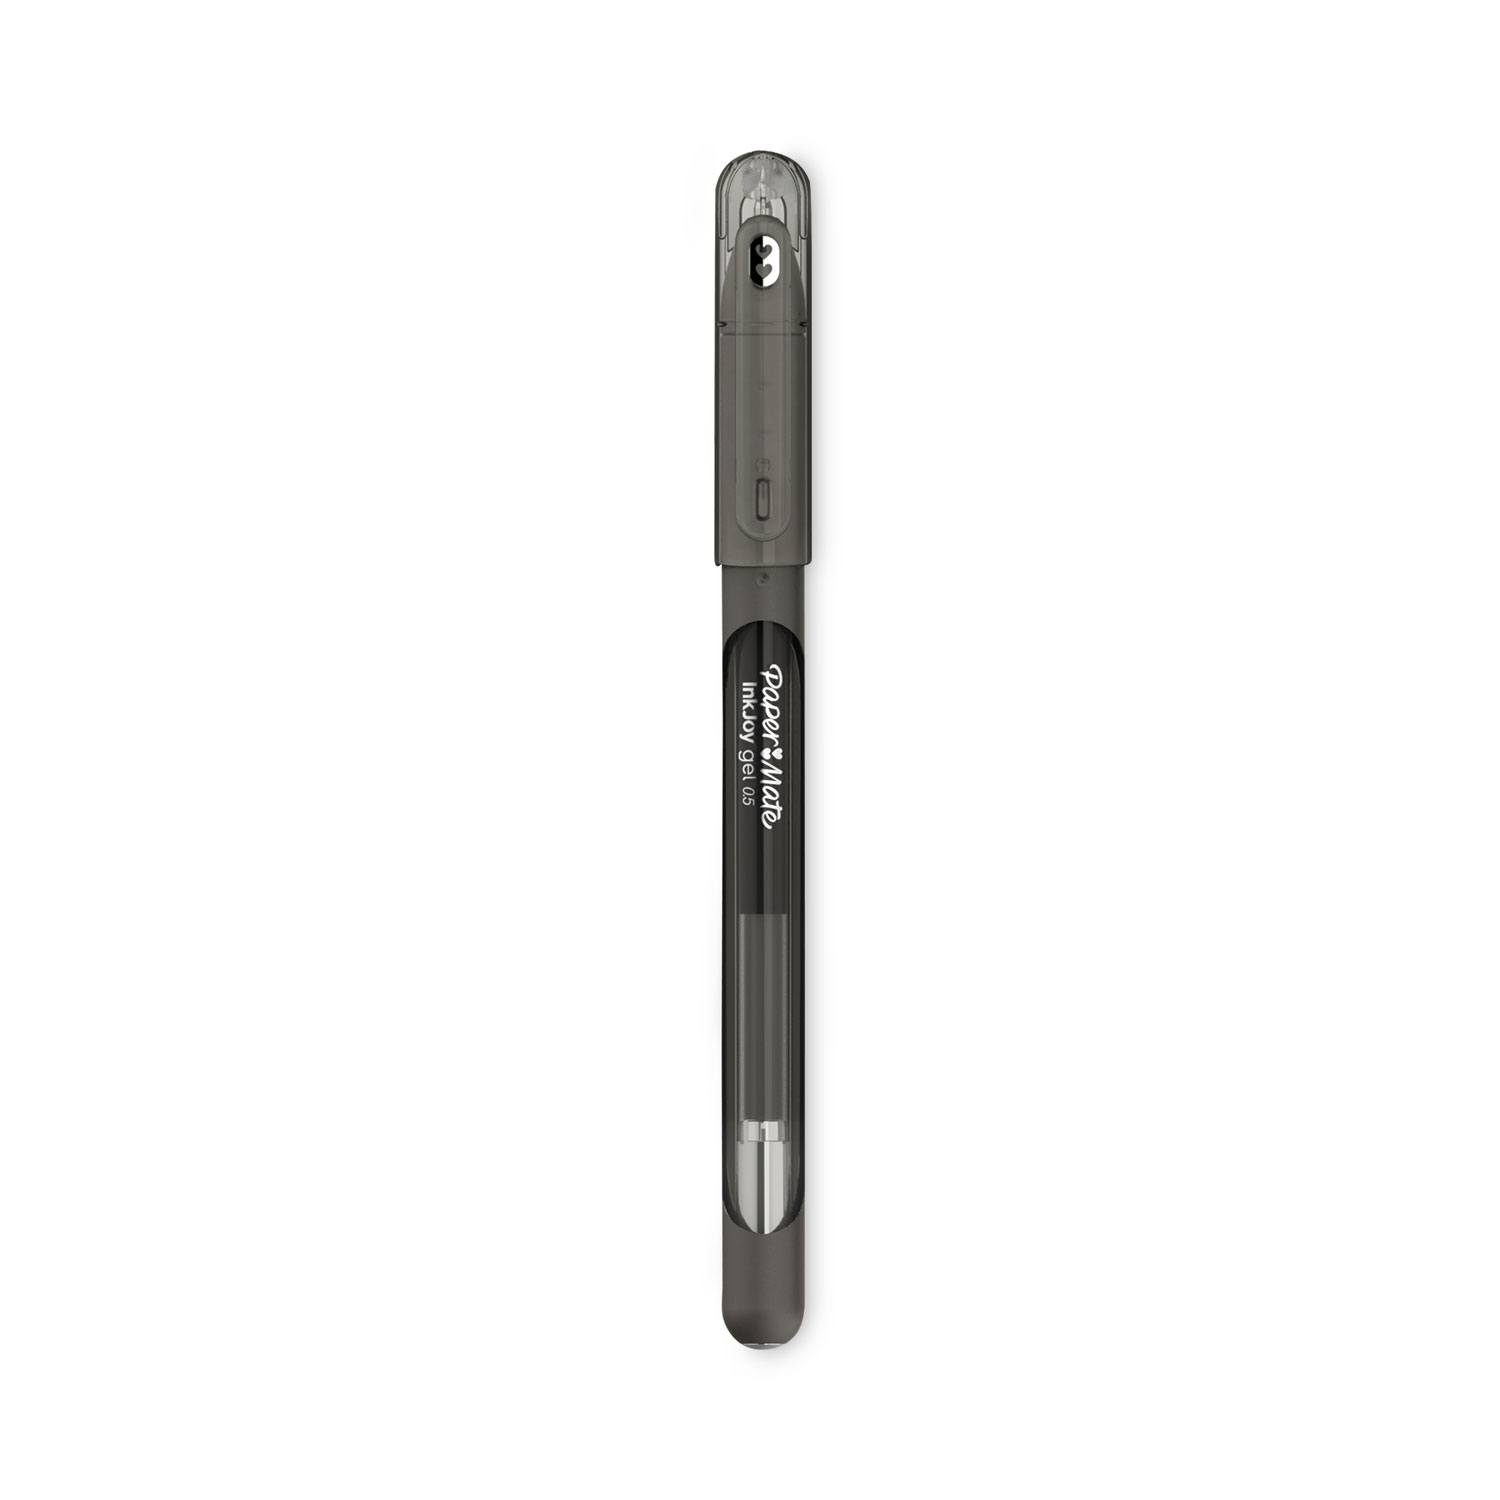 Paper Mate Gel Pen, Profile Retractable Pen, 0.7 mm, Black, 8 Count 